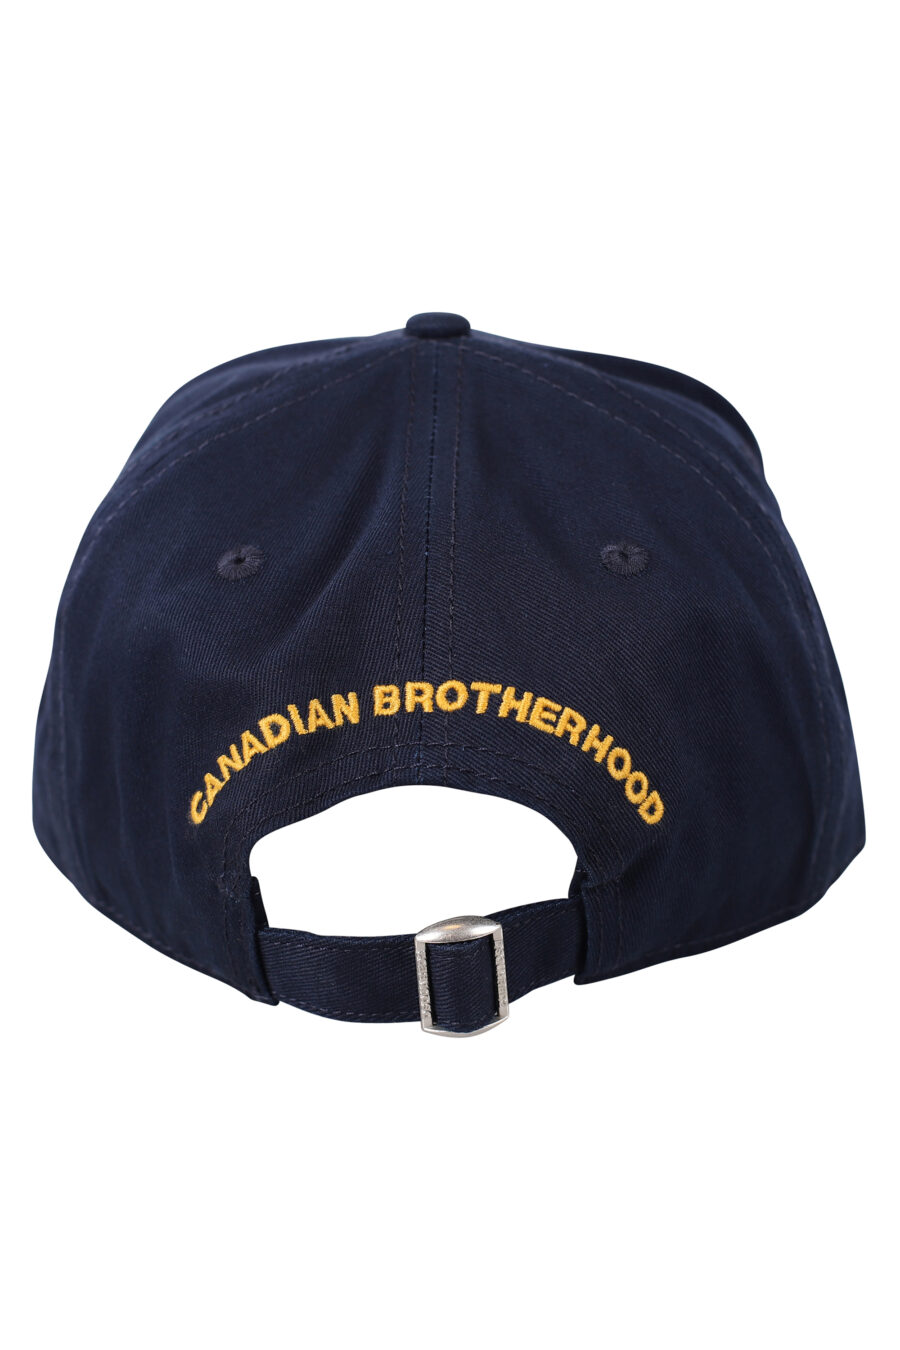 Gorra azul ajustable con logo amarillo pequeño - IMG 0475